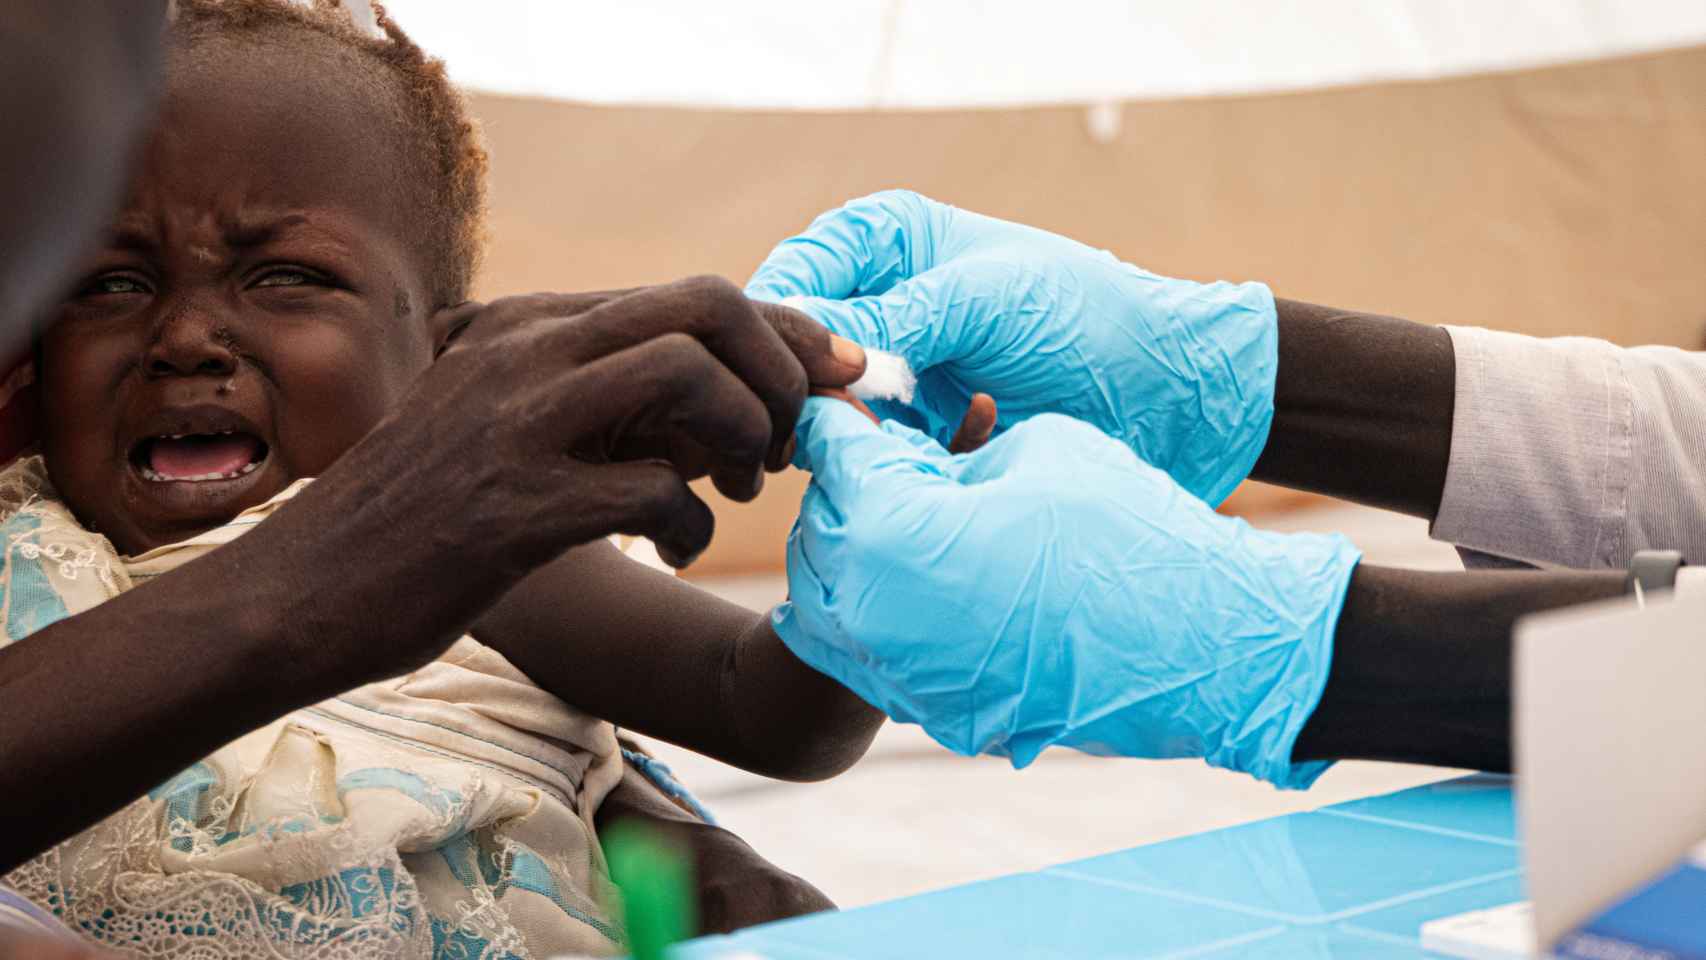 Un niño llora mientras le hacen la prueba para ver si tiene malaria en Sudán.